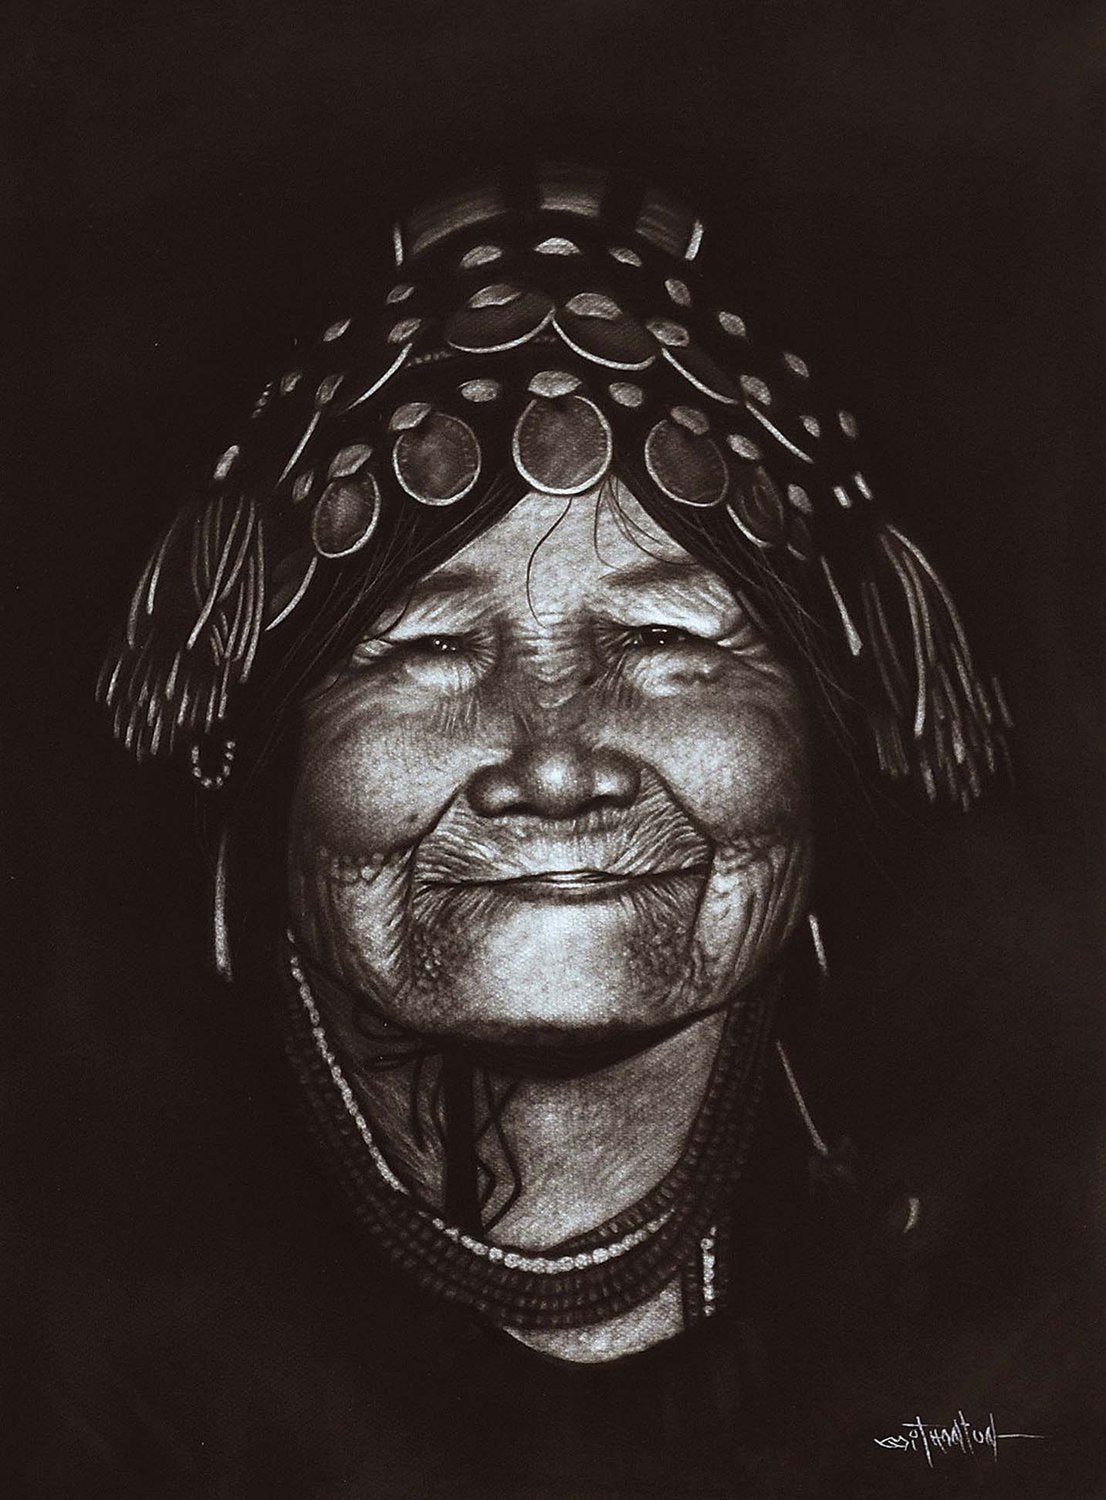 Old Burmese Woman|Than Tun- Charcoal on Board, 2015, 21 x 14.5 inches